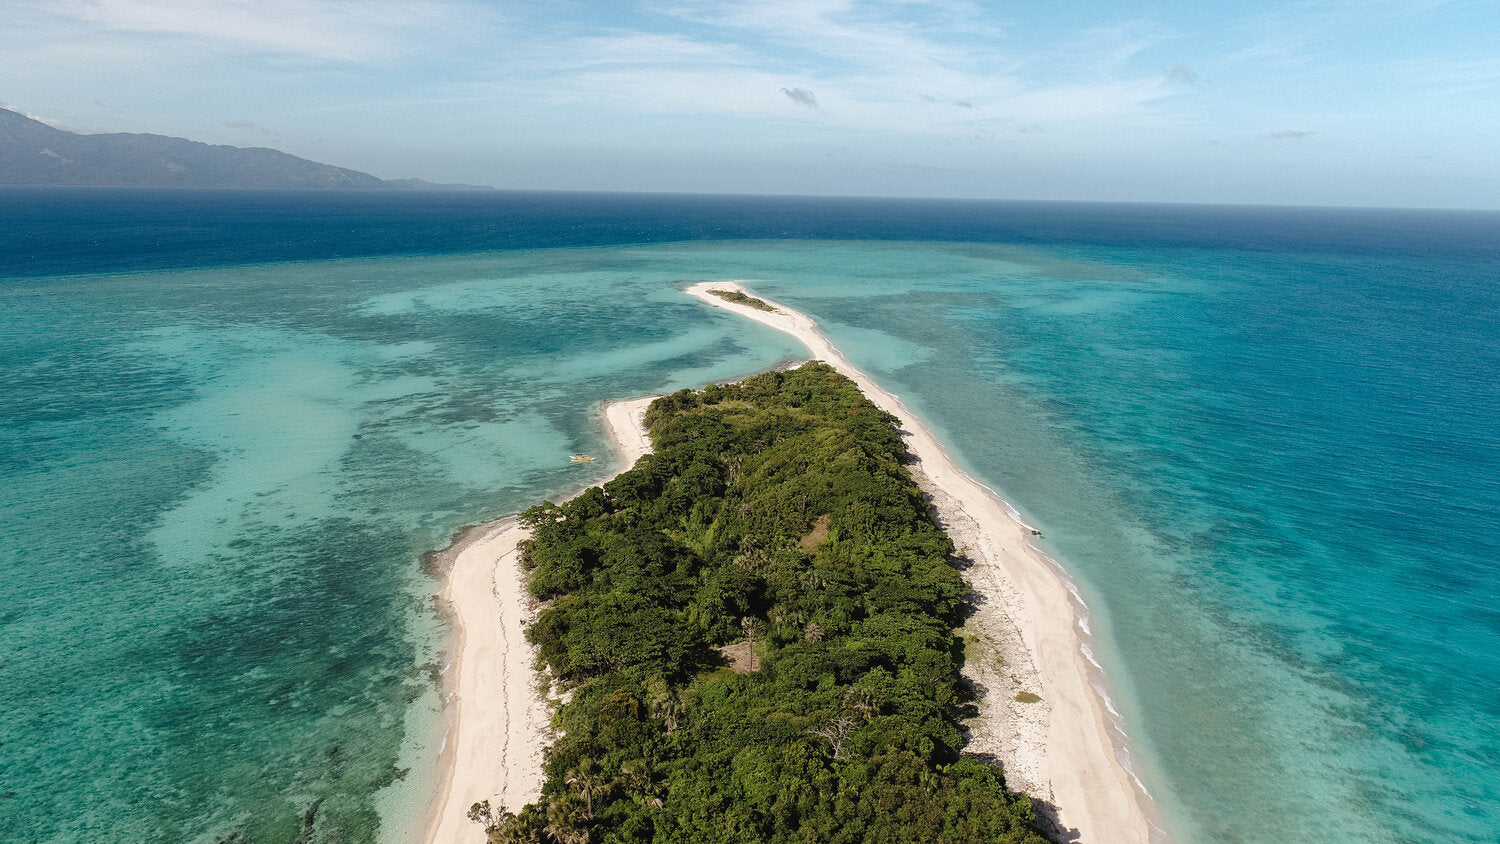 Drone shot of Cresta De Gallo, a Philippines Island